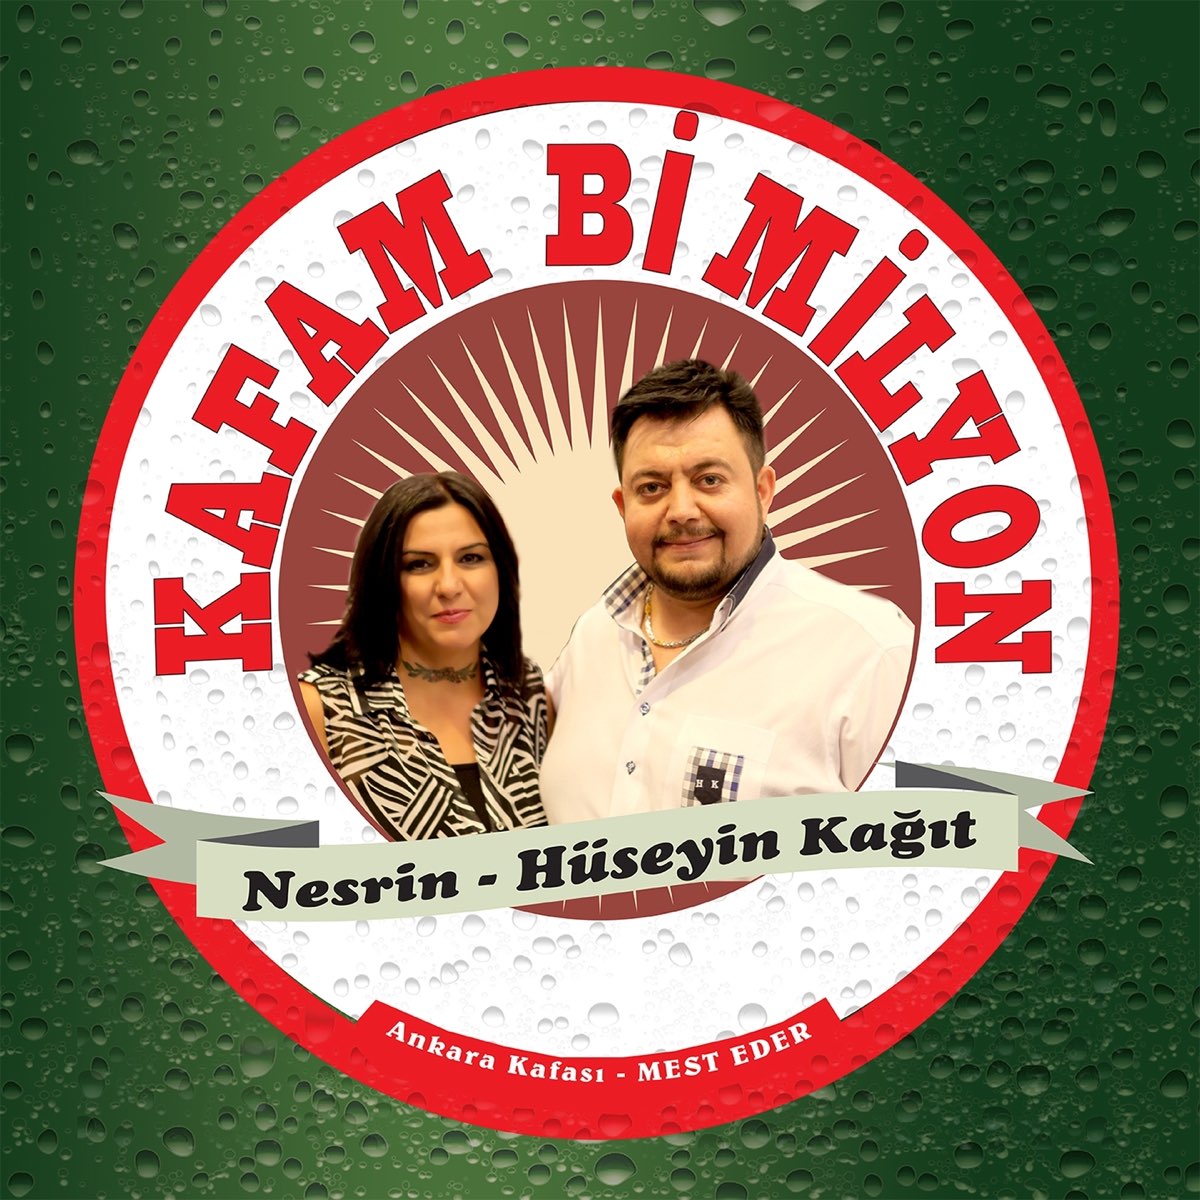 Kafam Bi Milyon - Single by Nesrin & Hüseyin Kağıt on Apple Music